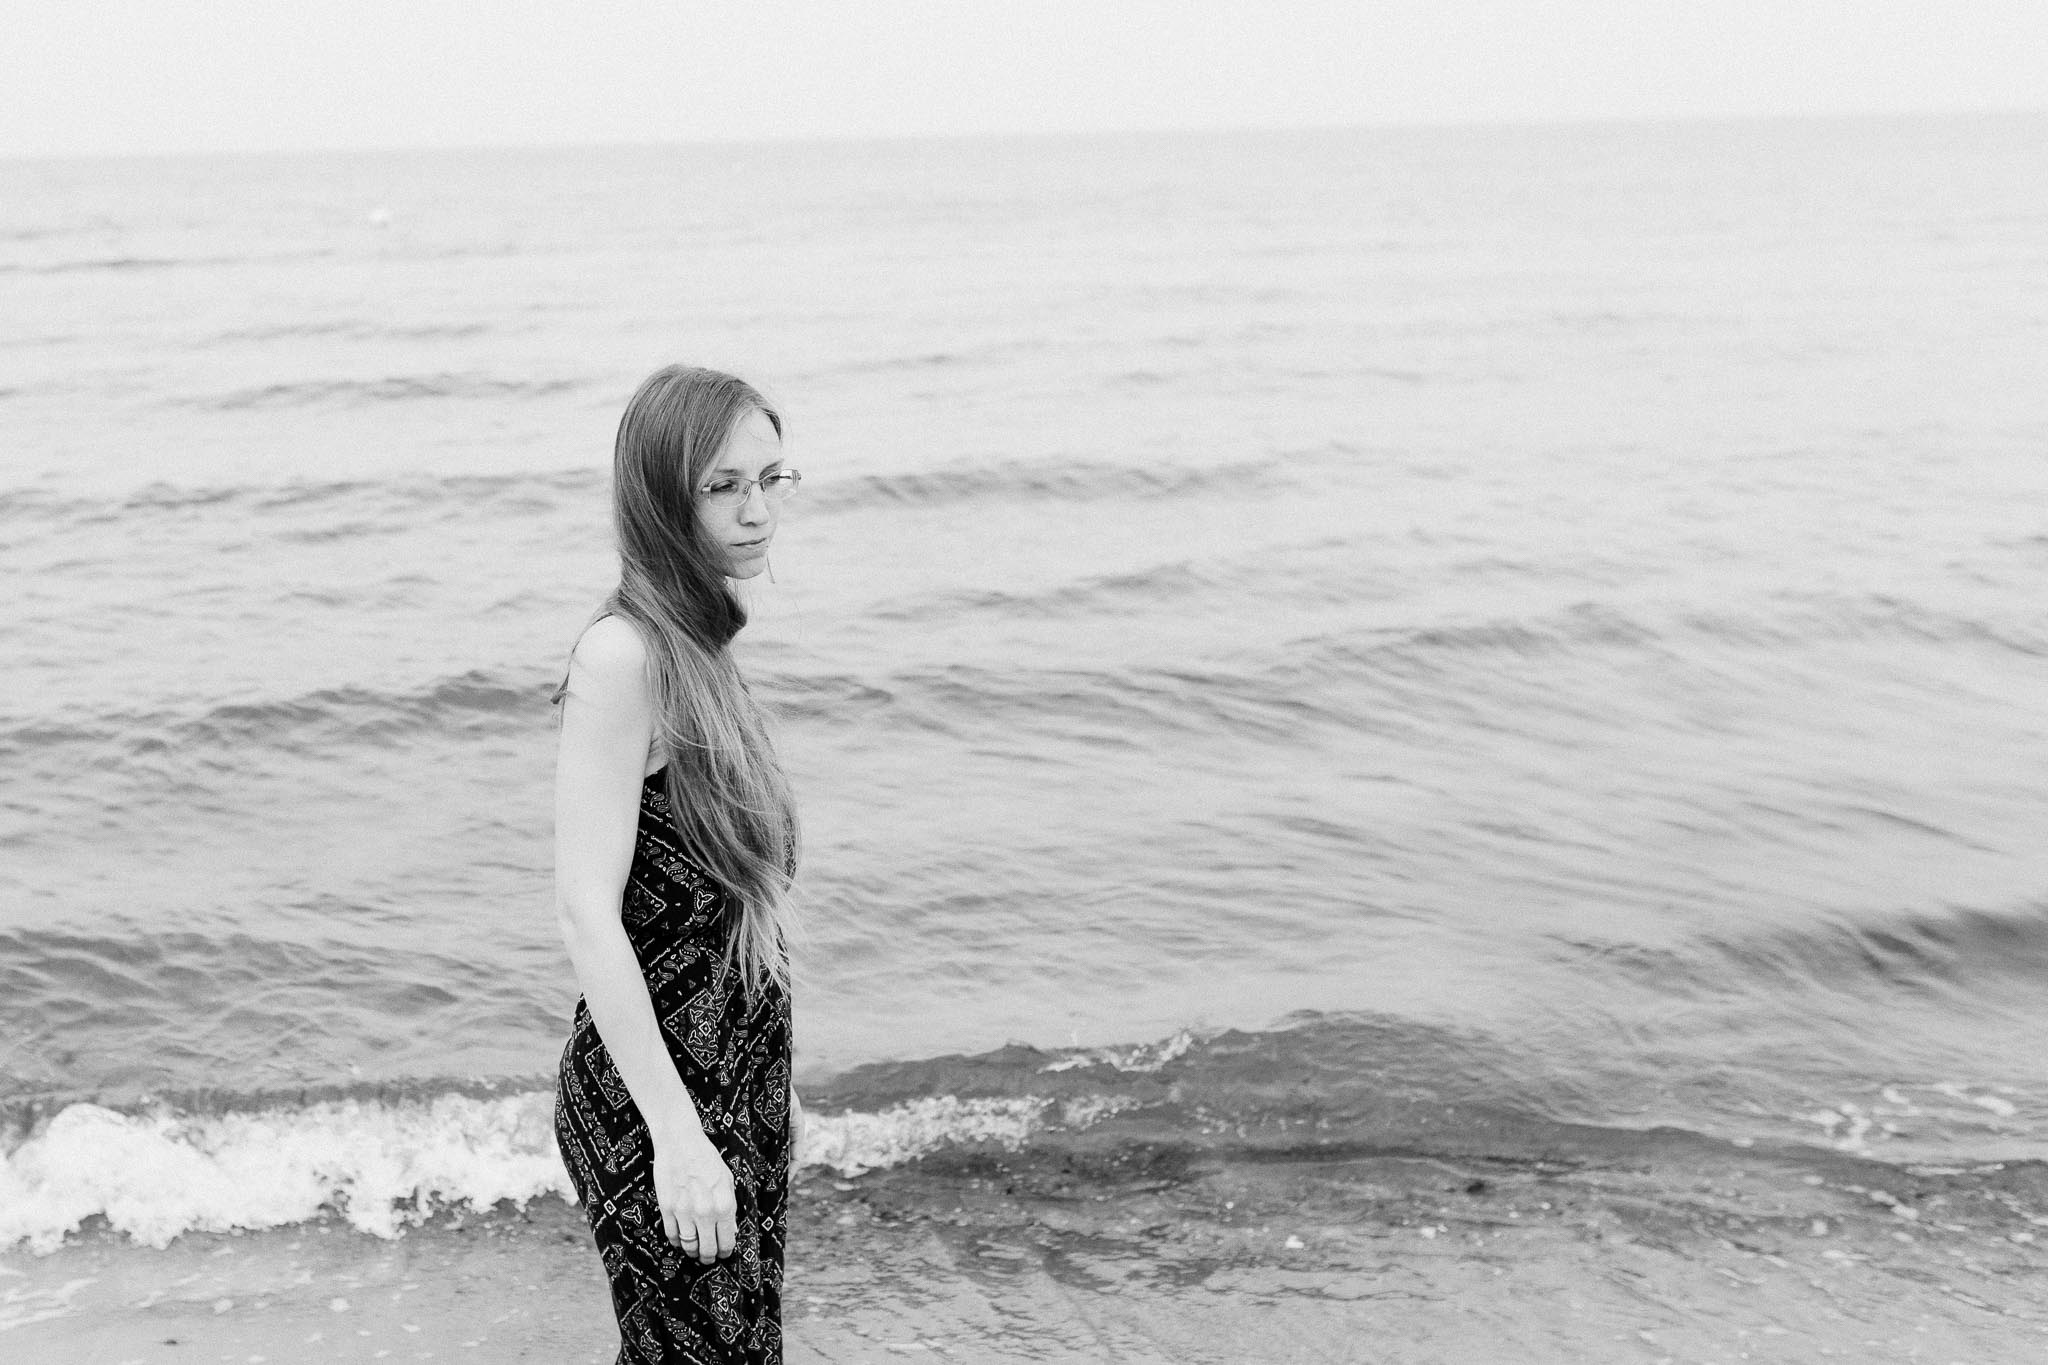 Ein Foto von mir, Maren Scheffler, an der Ostsee Dierhagen